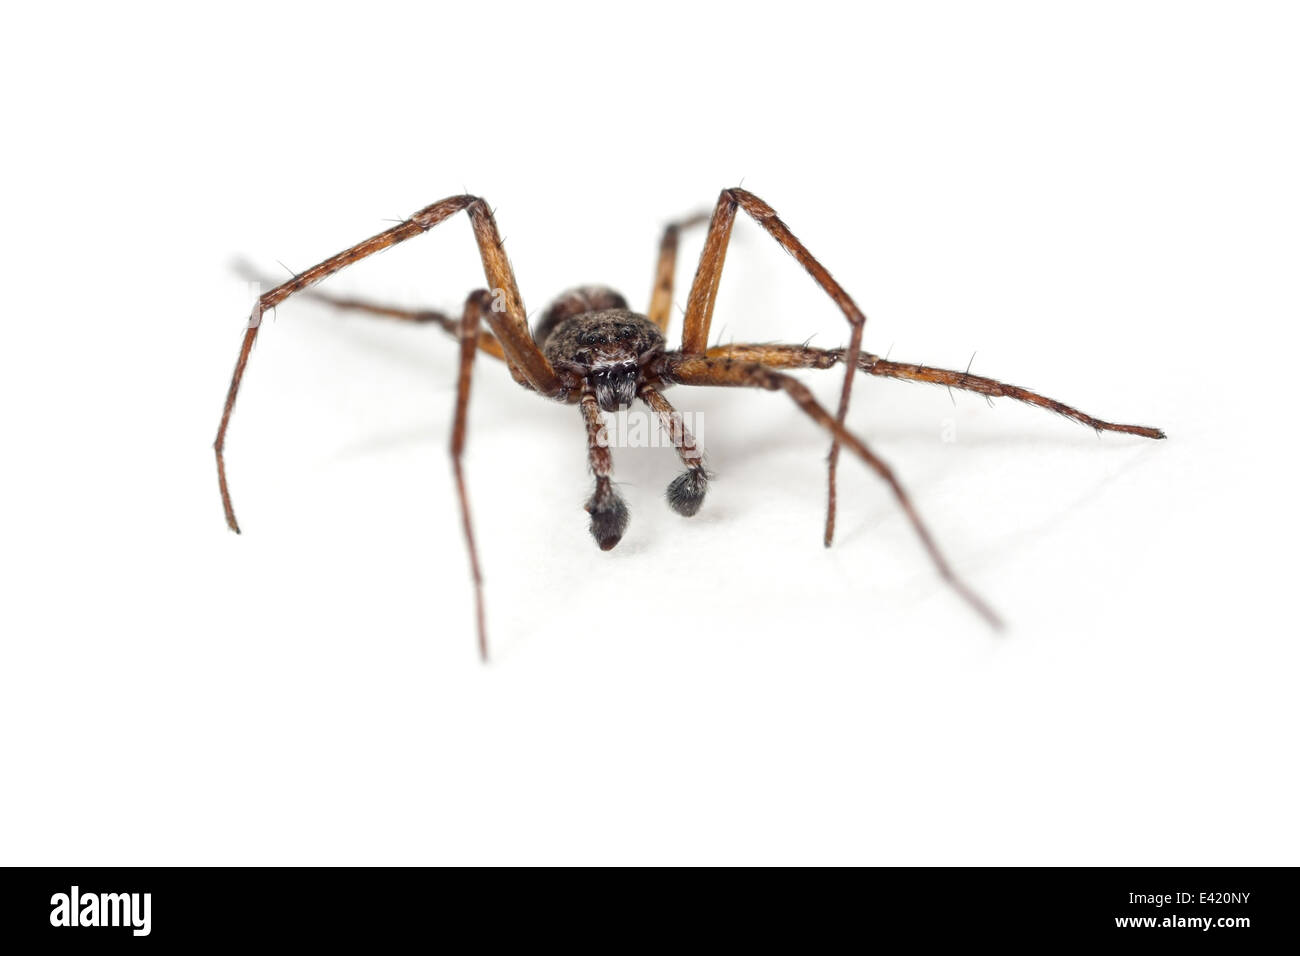 Männliche Philodromus Emarginatus Spinne, Teil der Familie Philodromidae - Running Krabben Spinnen. Isoliert auf weißem Hintergrund. Stockfoto